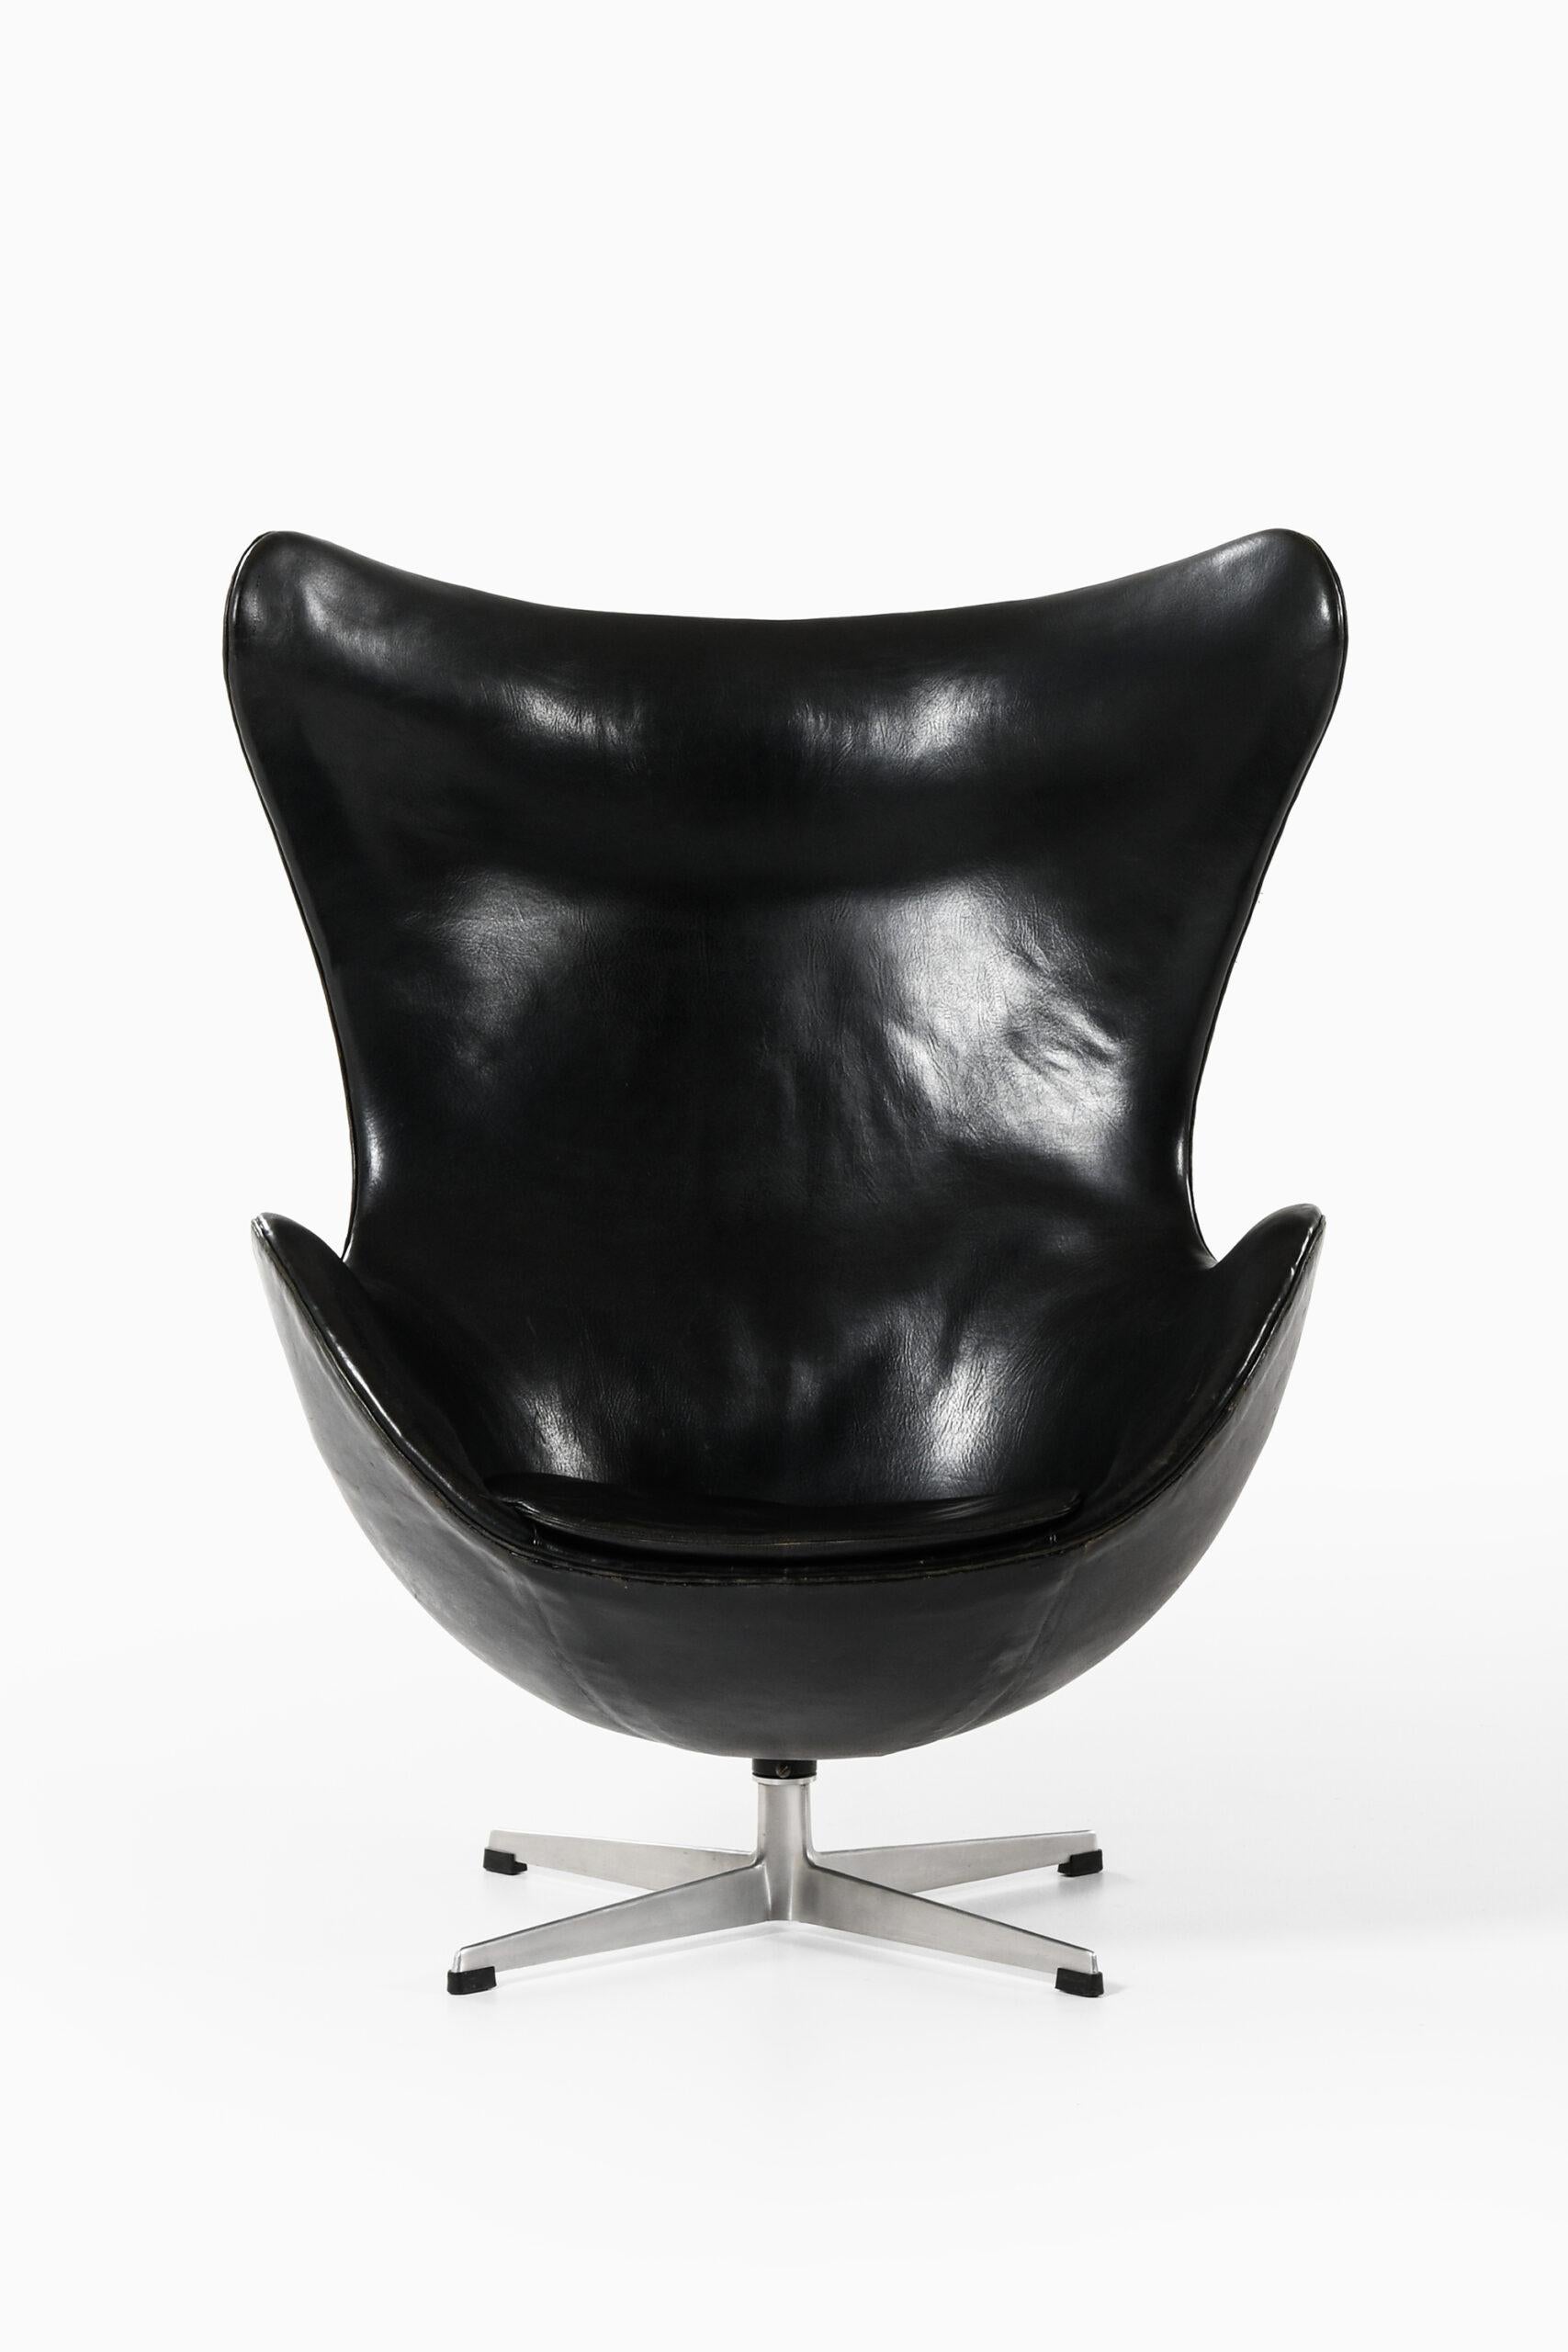 Rare fauteuil modèle 3316 / Egg conçu par Arne Jacobsen. Produit par Fritz Hansen au Danemark.